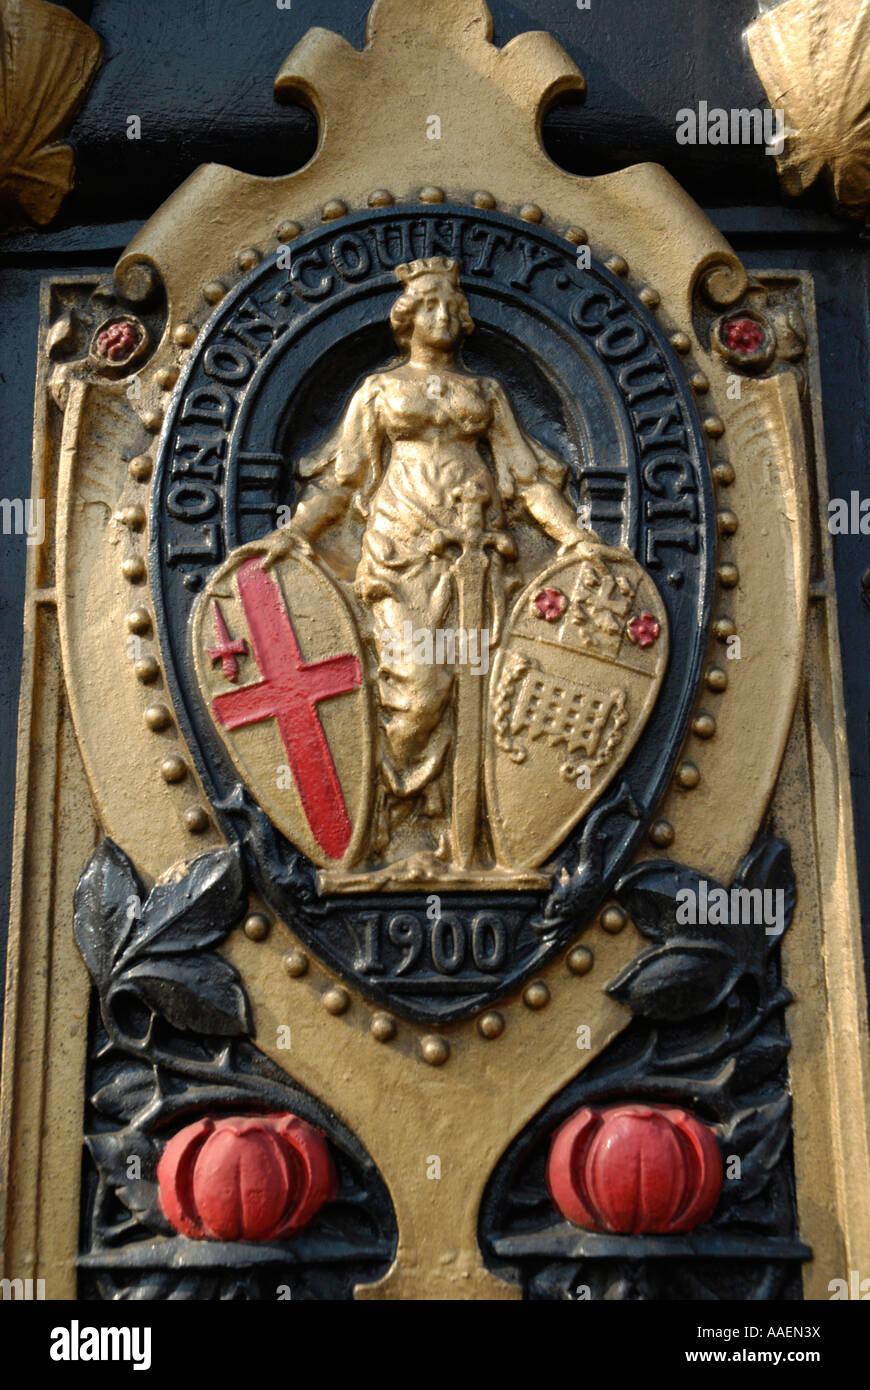 Emblem der London County Council 1900 auf Seite des Eisernen Straßenlaterne, Victoria Embankment, London, England, UK Stockfoto